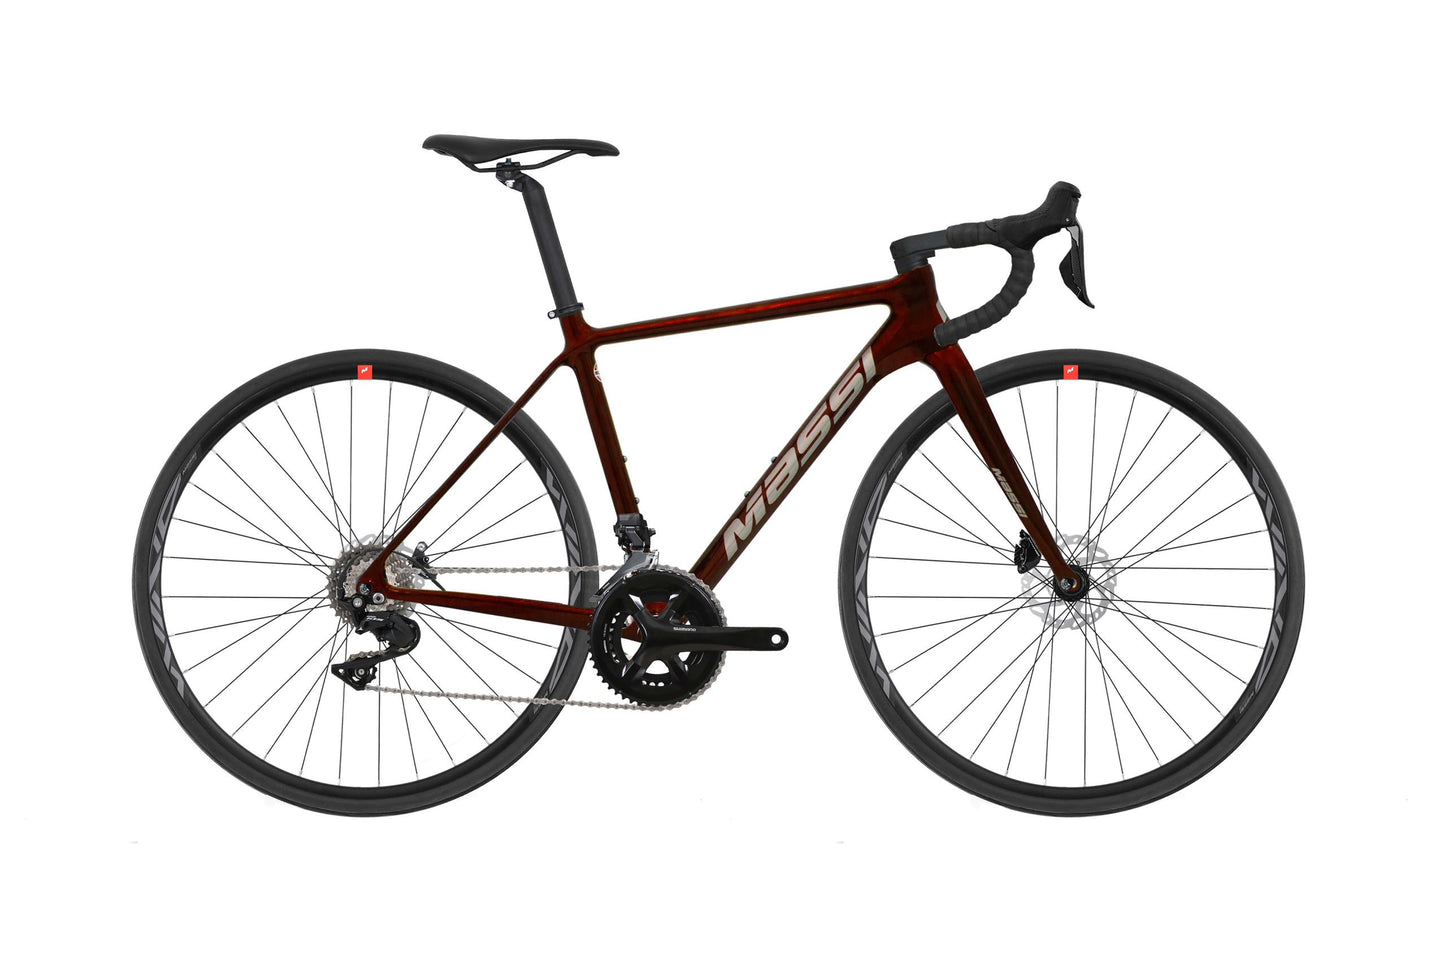 Massi - Bicicleta Team Race 2x11v 105/mix - Disc Carbono, talla 54